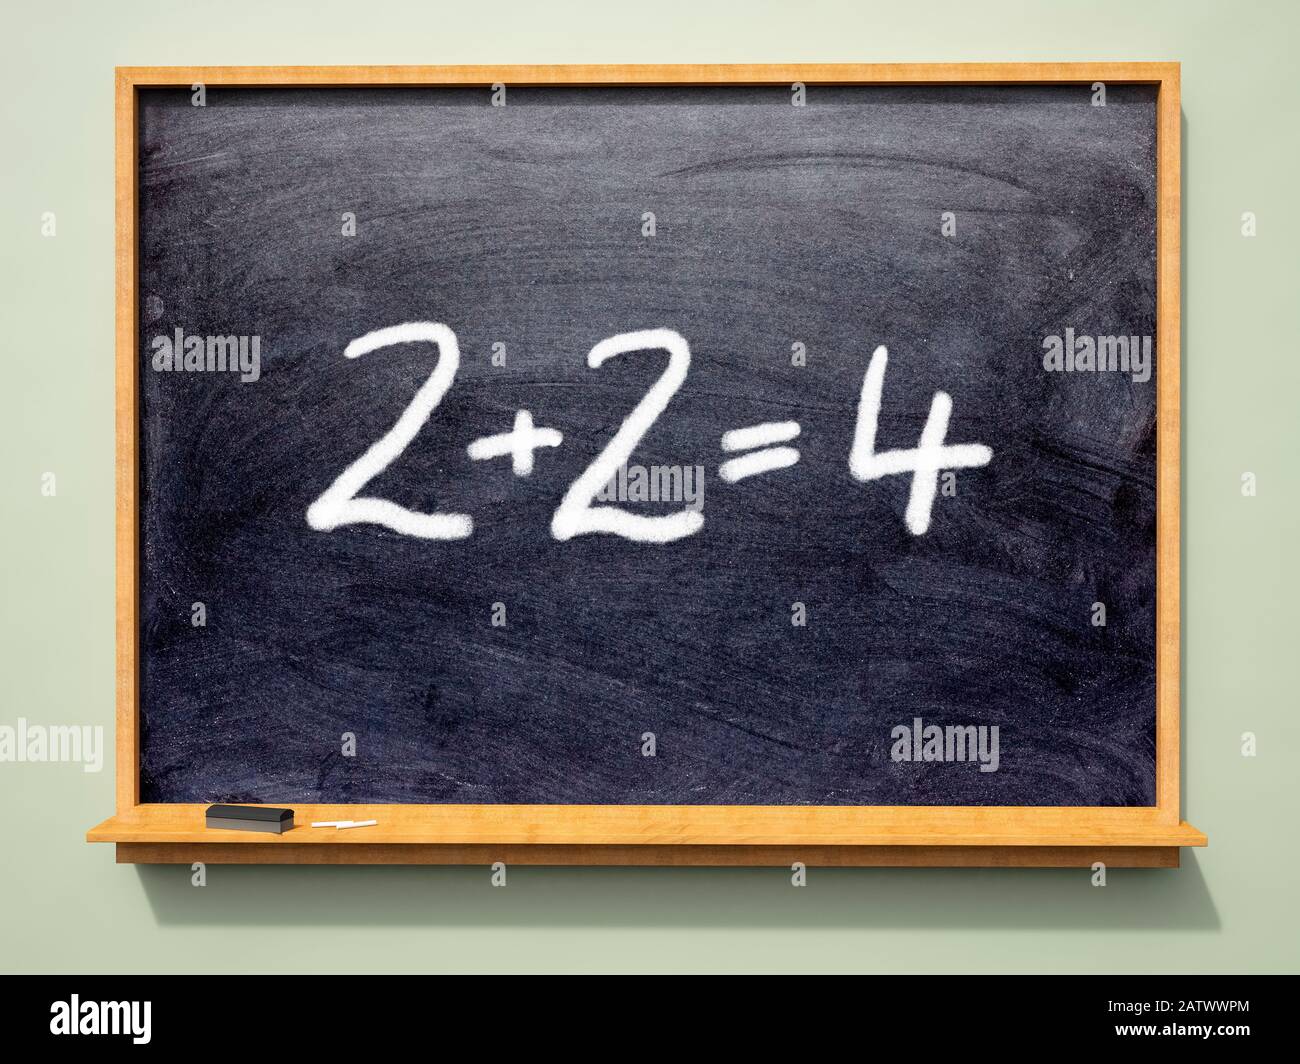 2+2=4 somme écrite sur un tableau noir de l'école Banque D'Images